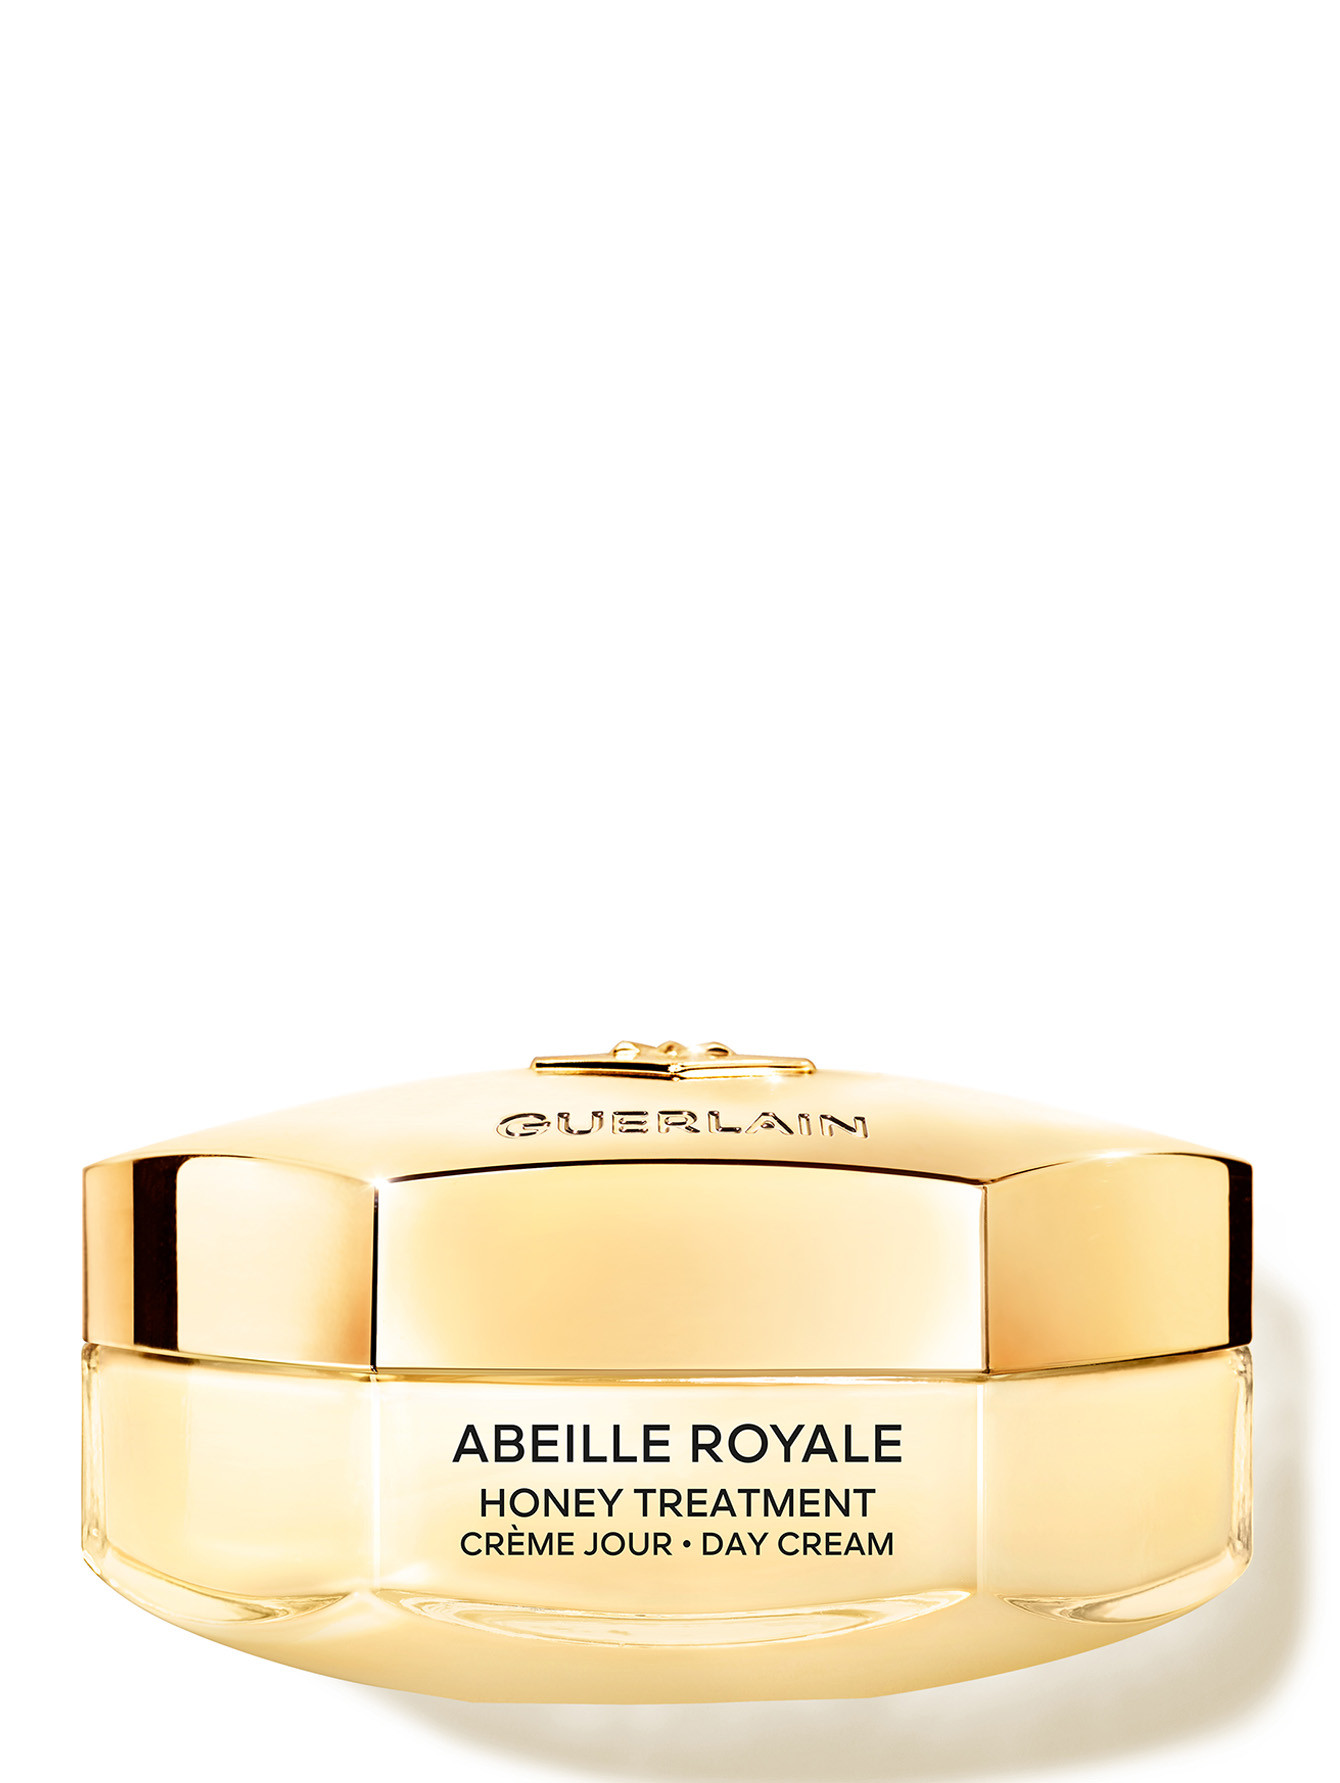 Дневной крем для лица Abeille Royale, 50 мл - Общий вид